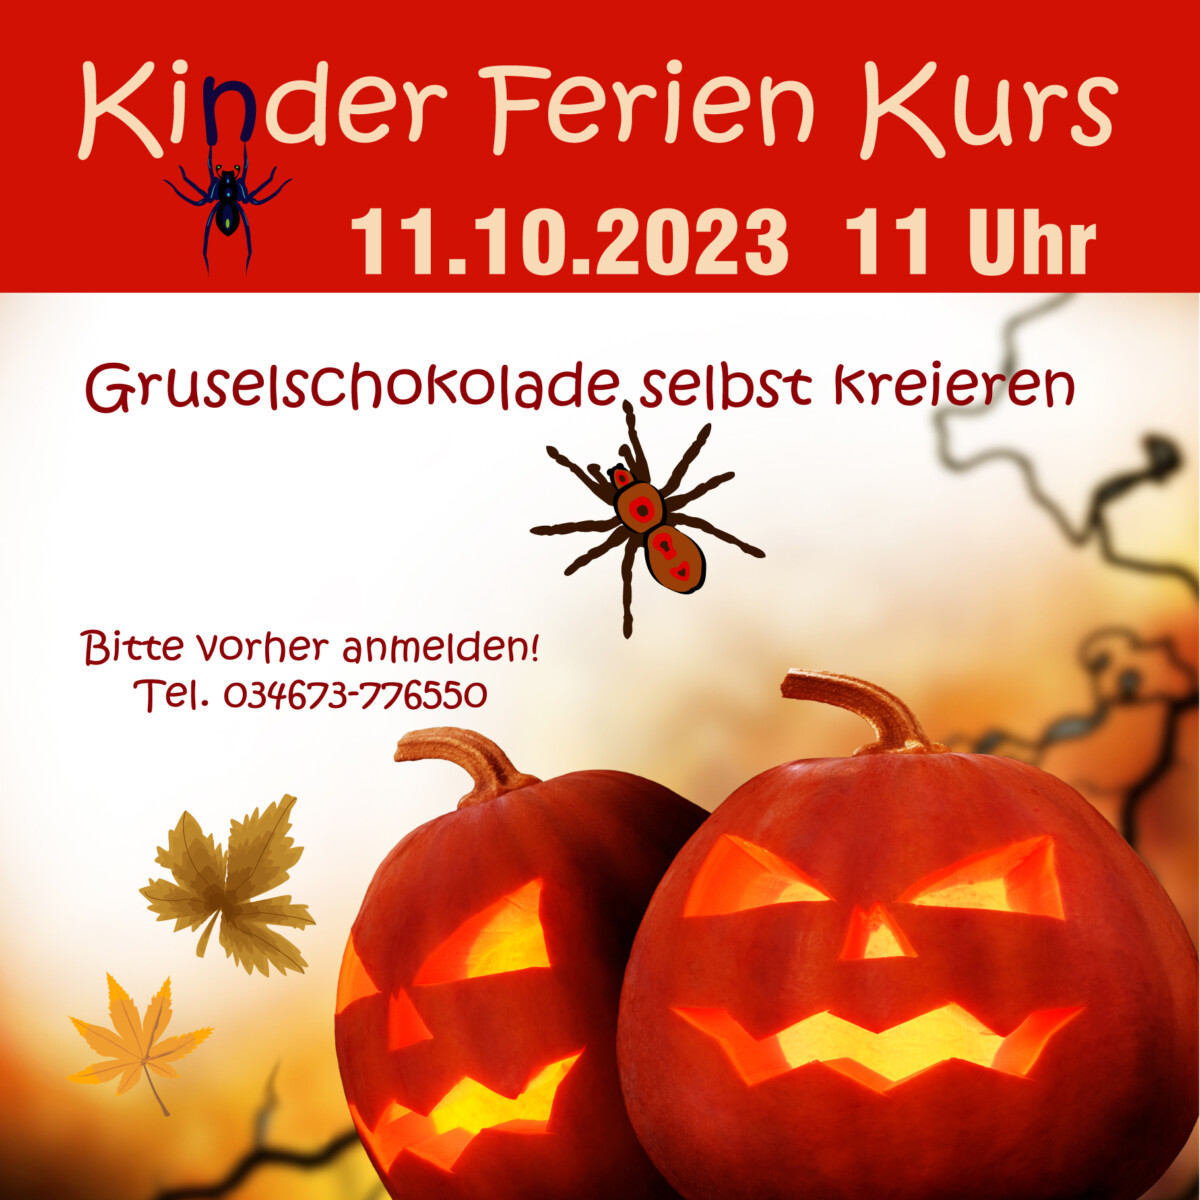 Grafik für Kinder Halloween Kurs 11.10.2023 Goethe-Chocolaterie